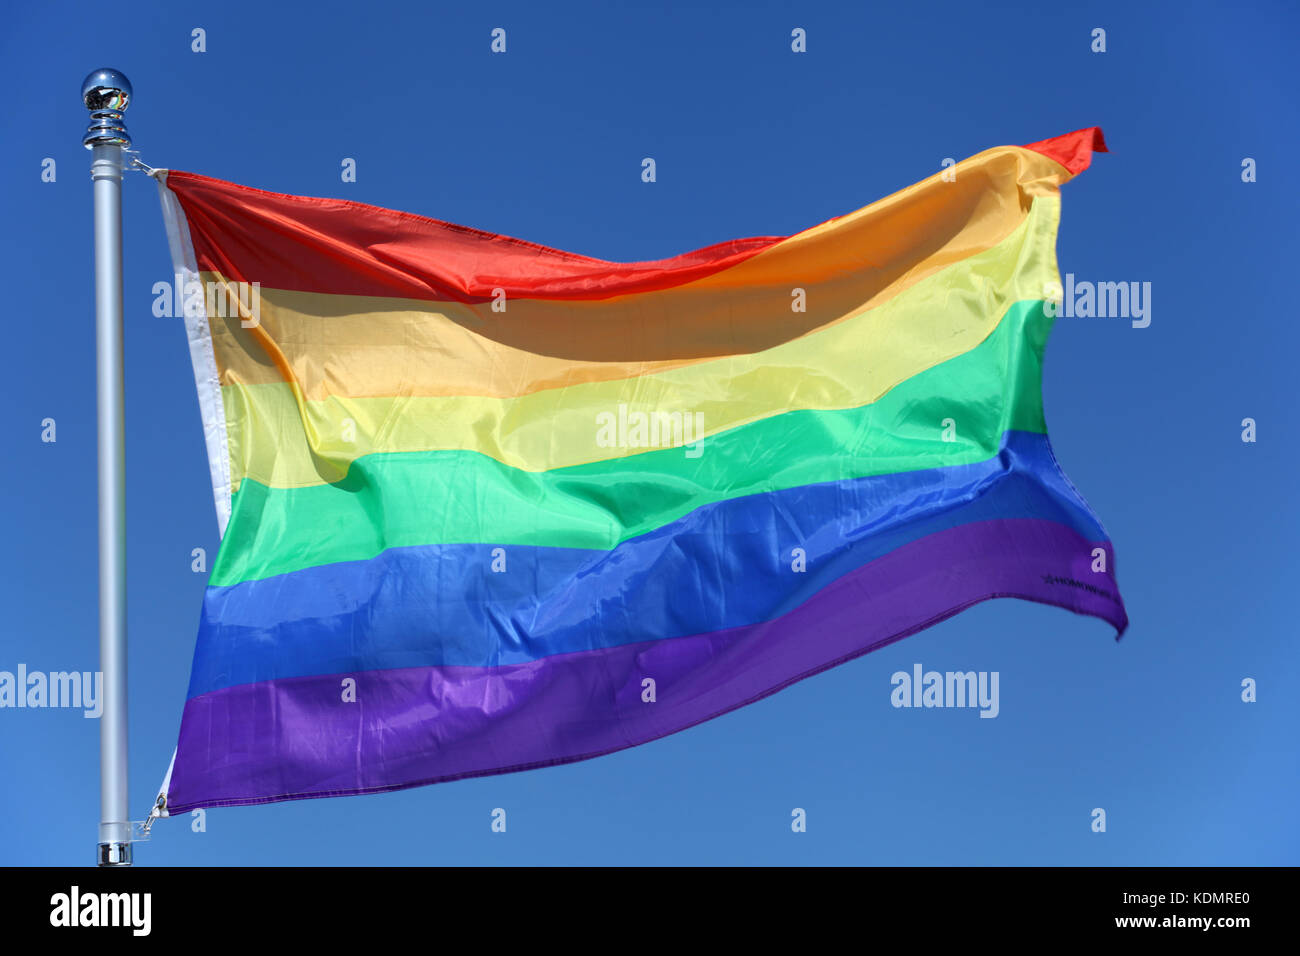 La bandera del arco iris - símbolo LGBT - Lesbianas, gays, bisexuales o personas transgénero relación, el amor o la sexualidad Foto de stock